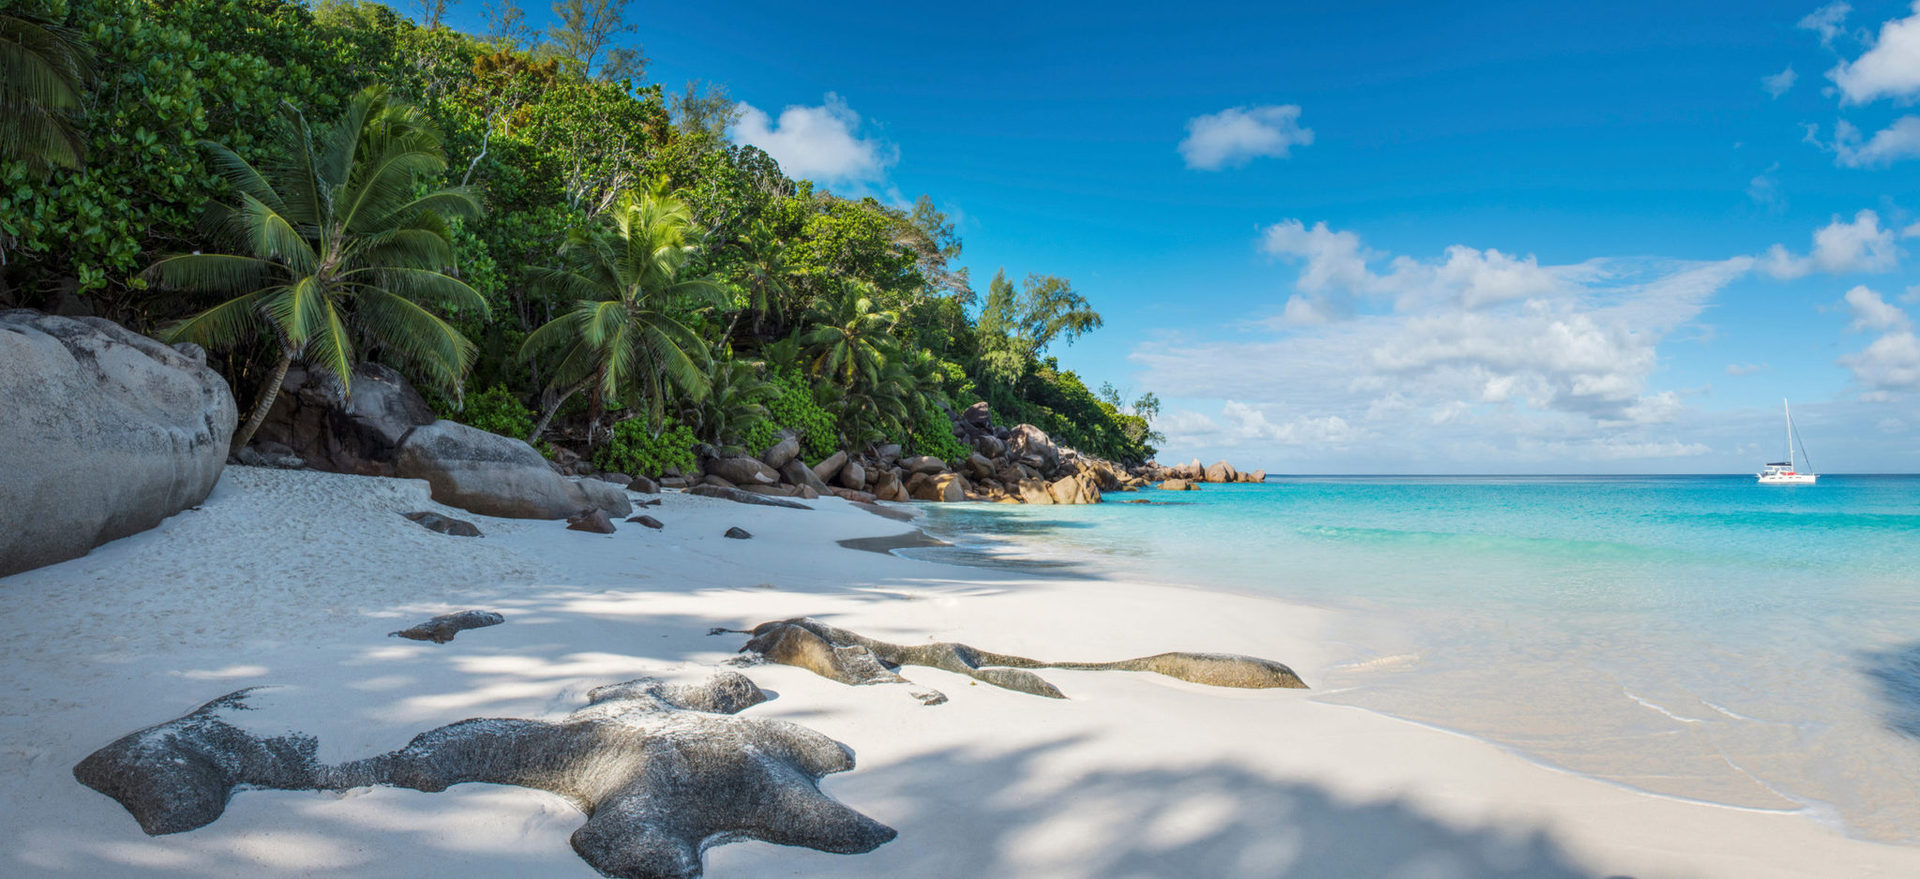 Для вашего отдыха - три замечательных пляжа с белым песком, живописные холмы, пышная зелень и экзотические растения.